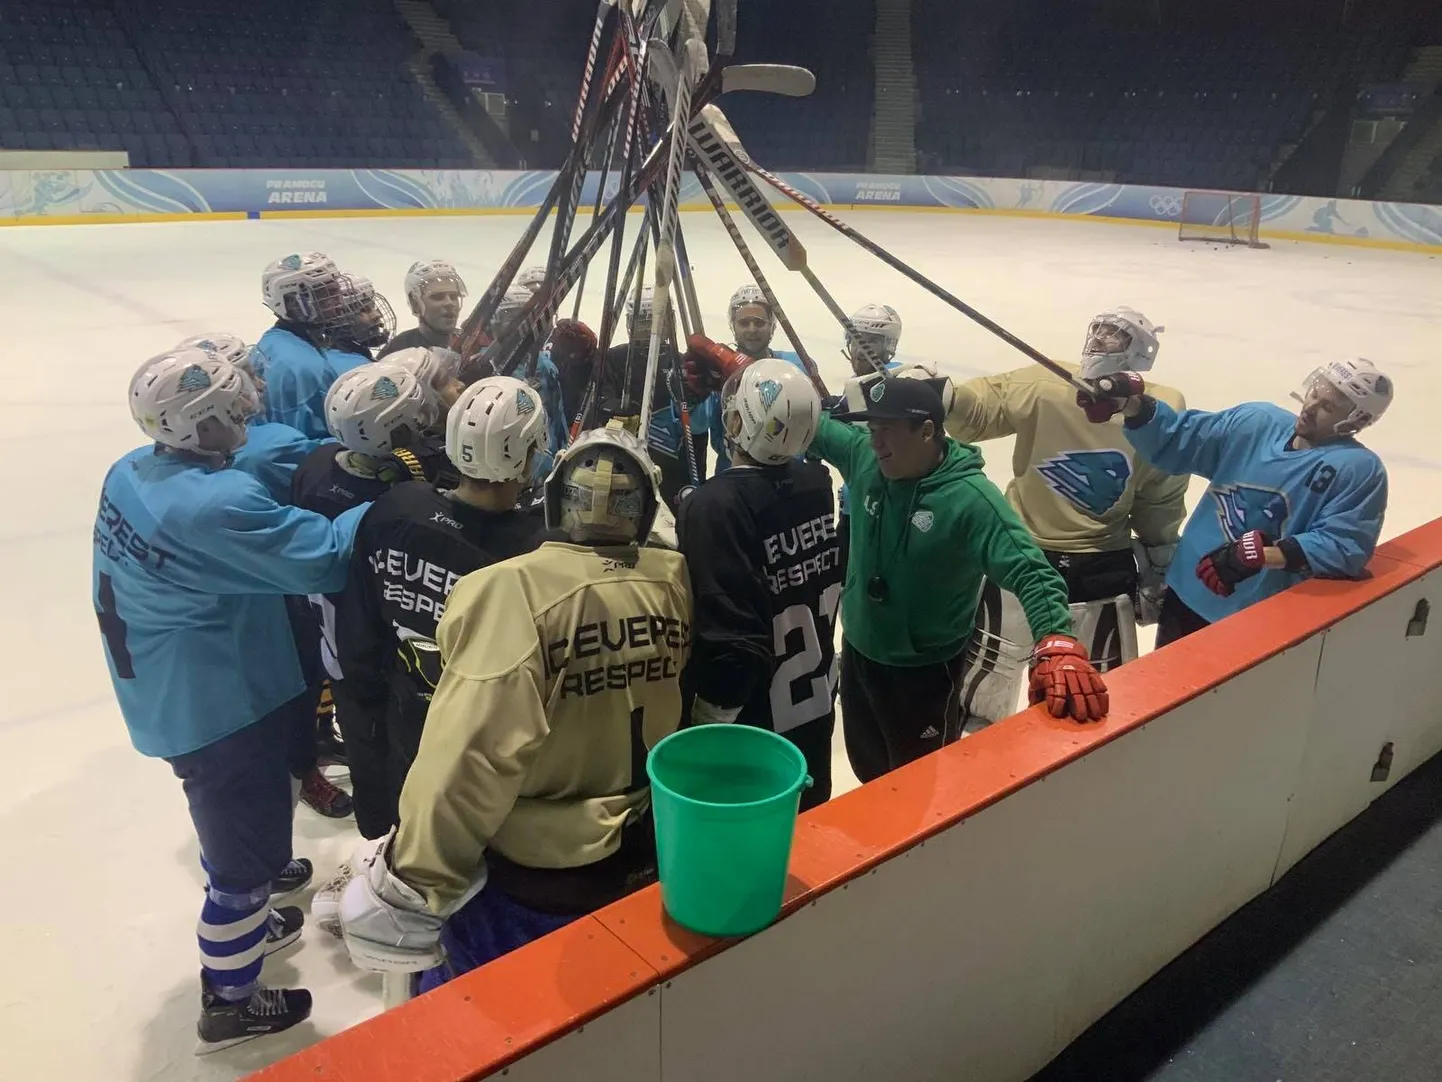 В минувшие выходные в Вильнюсе хоккеисты кохтла-ярвеского "Everest" впервые в истории клуба приняли участие во взрослом международном турнире.